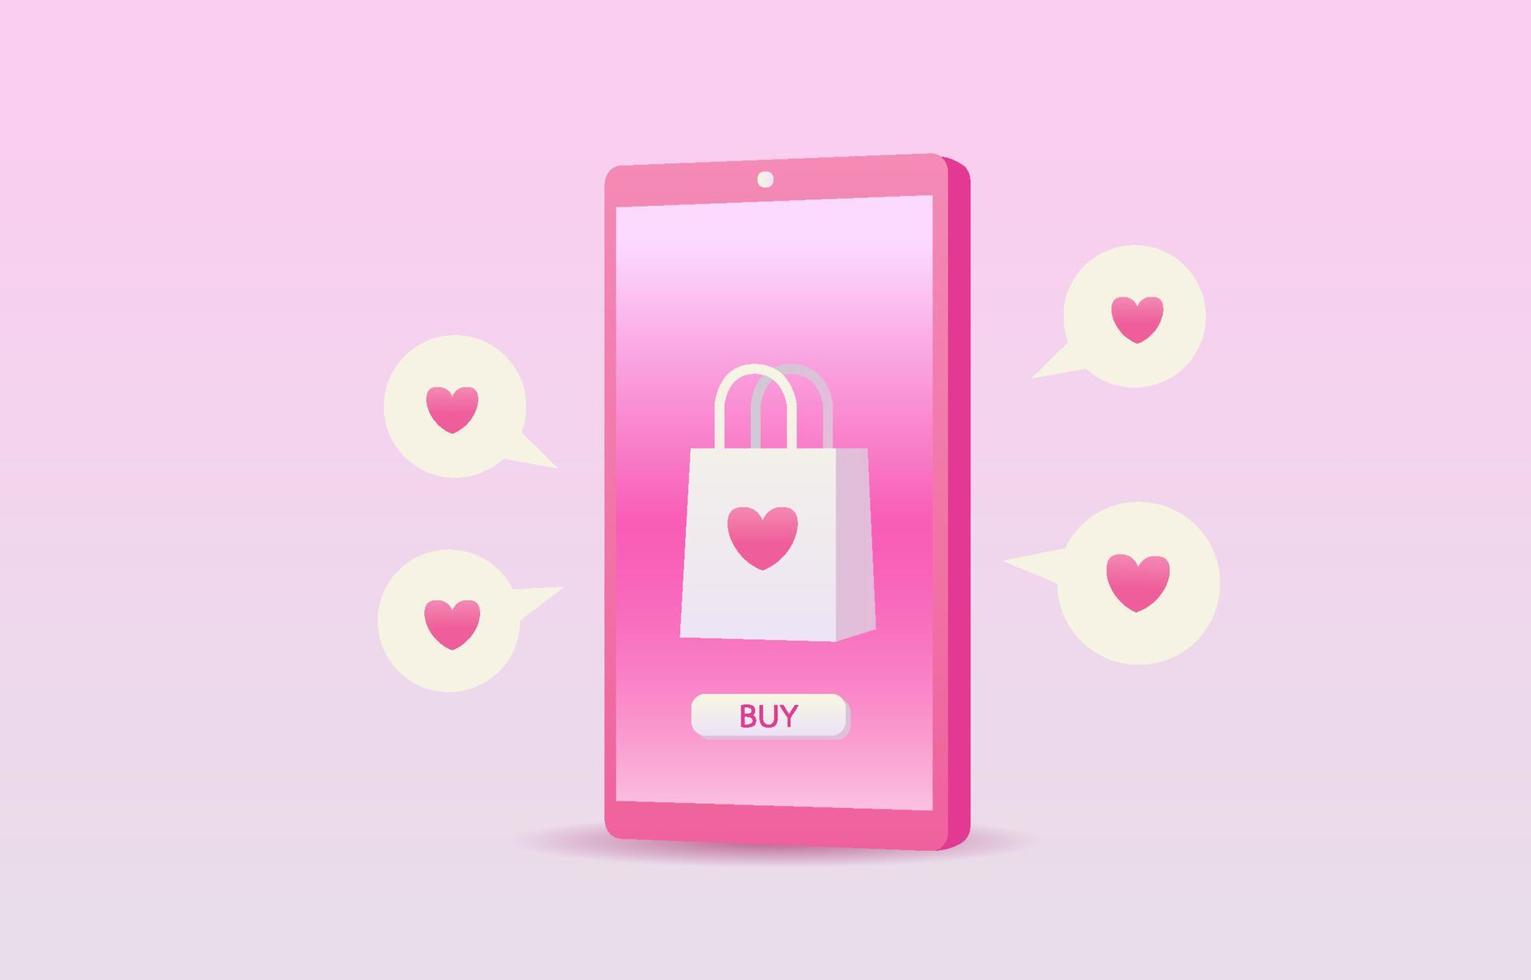 tienda en línea en el concepto de amor o san valentín. teléfonos móviles, corazones, carritos, cartas de amor y cajas de regalo representan el amor en un fondo rosa. aplicación de compras en el teléfono inteligente. diseño para banner, anuncio, web. vector